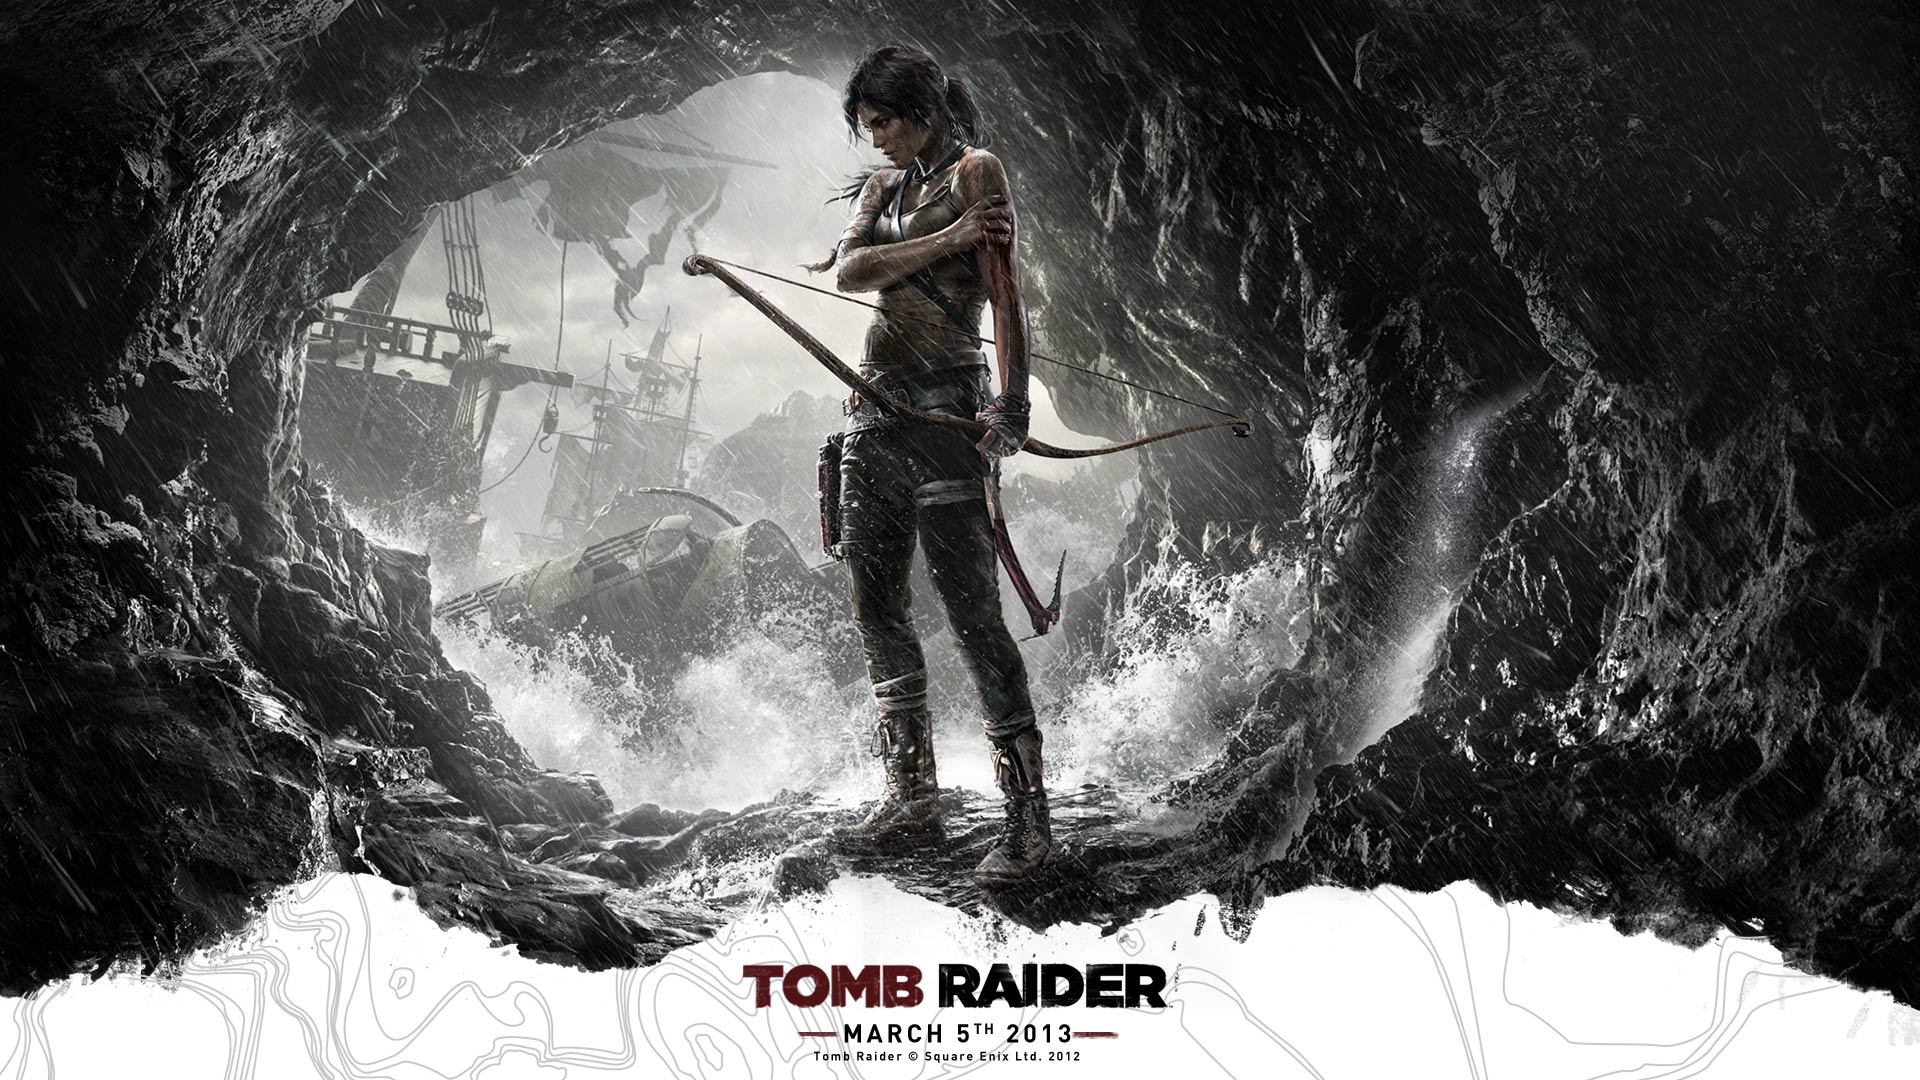 28+] Tomb Raider Wallpapers HD - WallpaperSafari